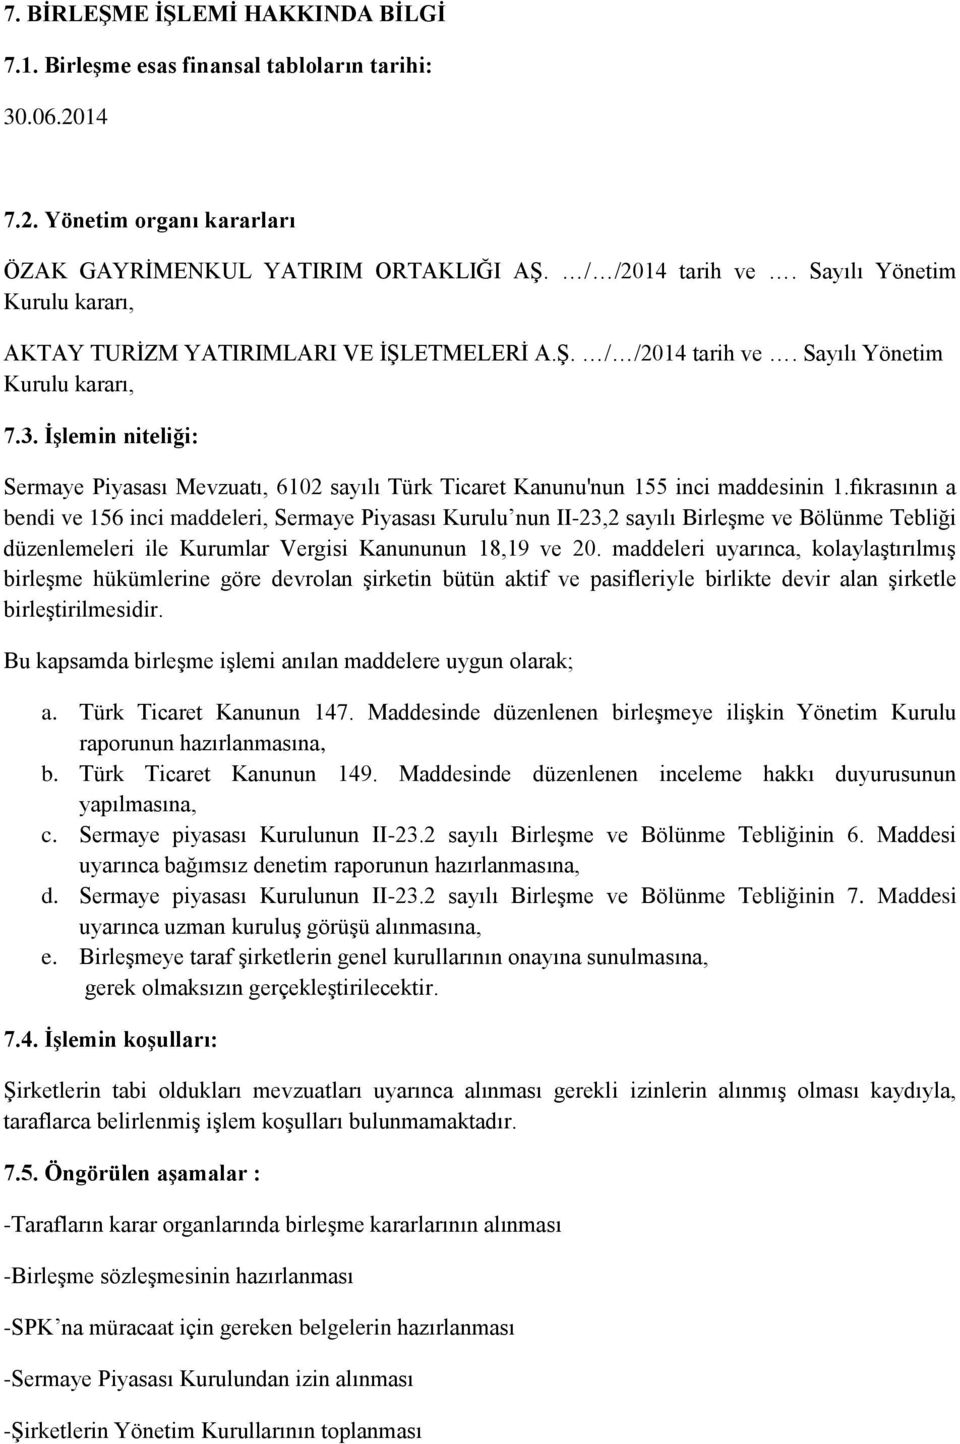 İşlemin niteliği: Sermaye Piyasası Mevzuatı, 6102 sayılı Türk Ticaret Kanunu'nun 155 inci maddesinin 1.